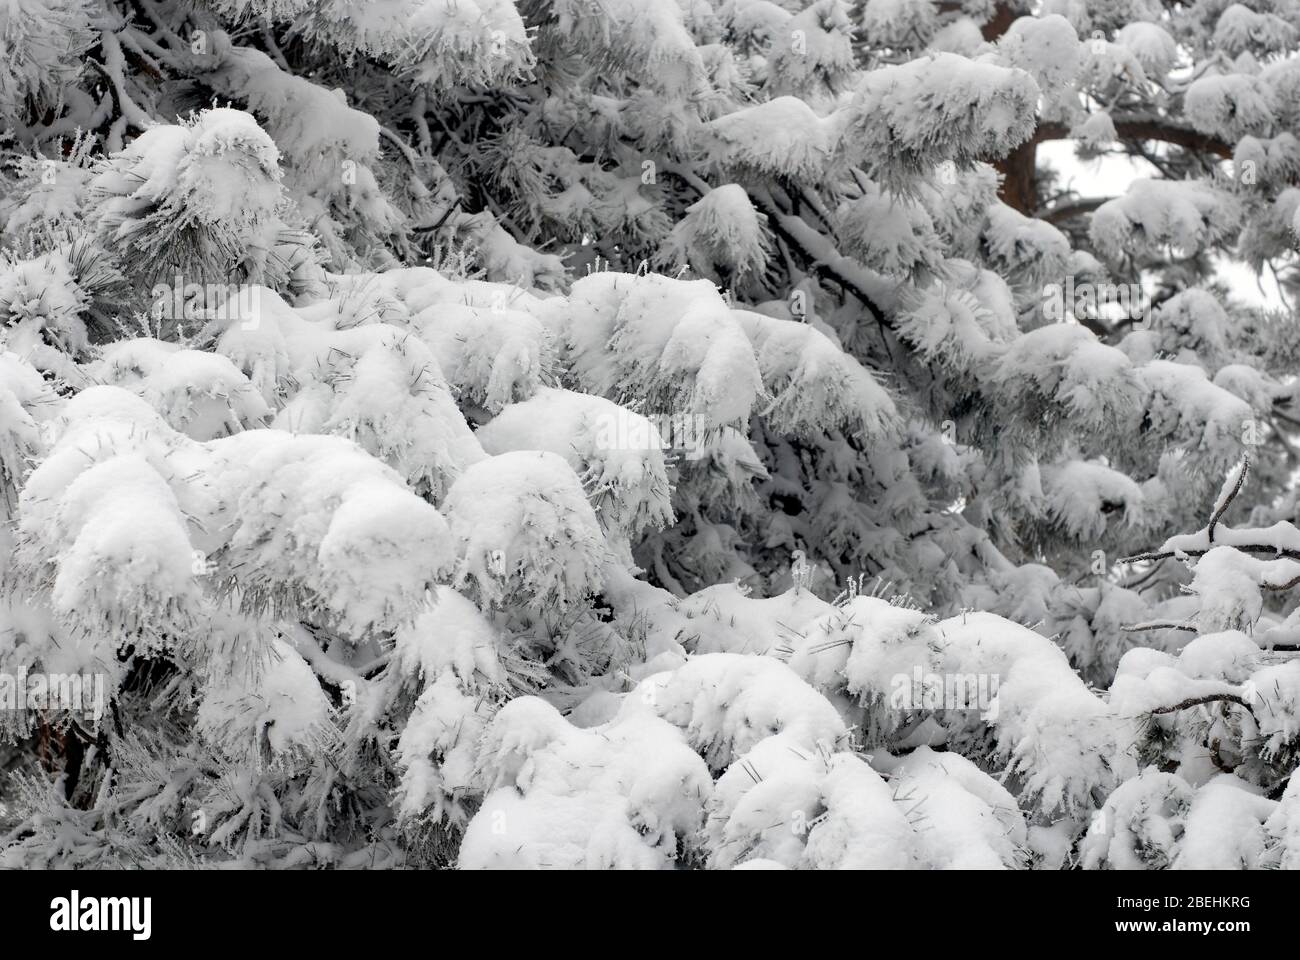 Snow on pine tree near Boulder, Colorado Stock Photo